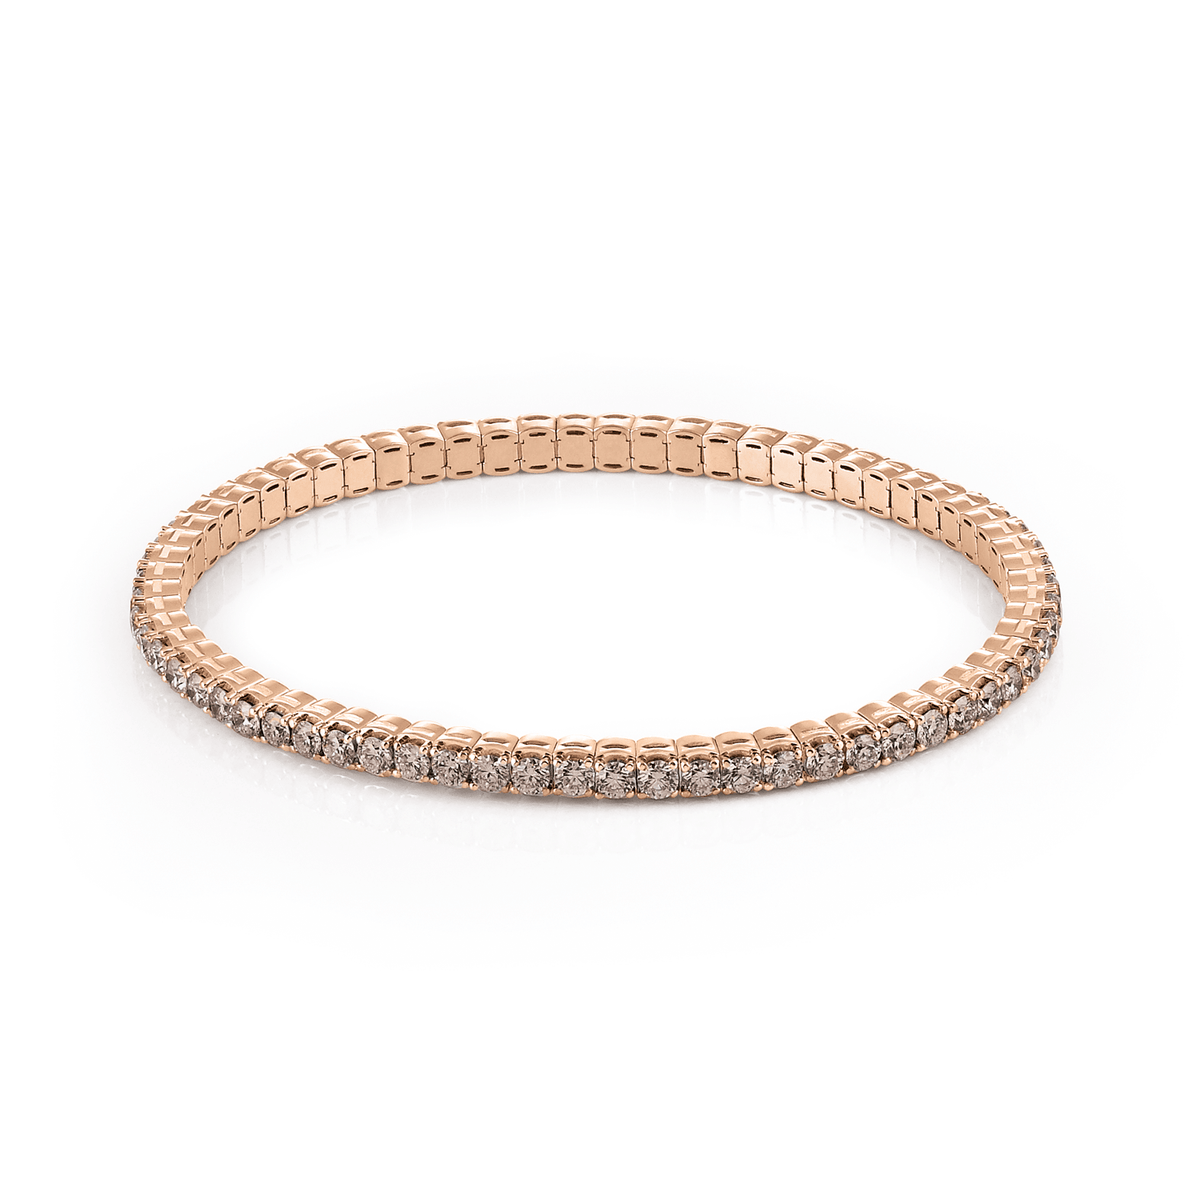 Al Coro Stretchy Bracelet in 18k Rose Gold with Diamonds - Orsini Jewellers